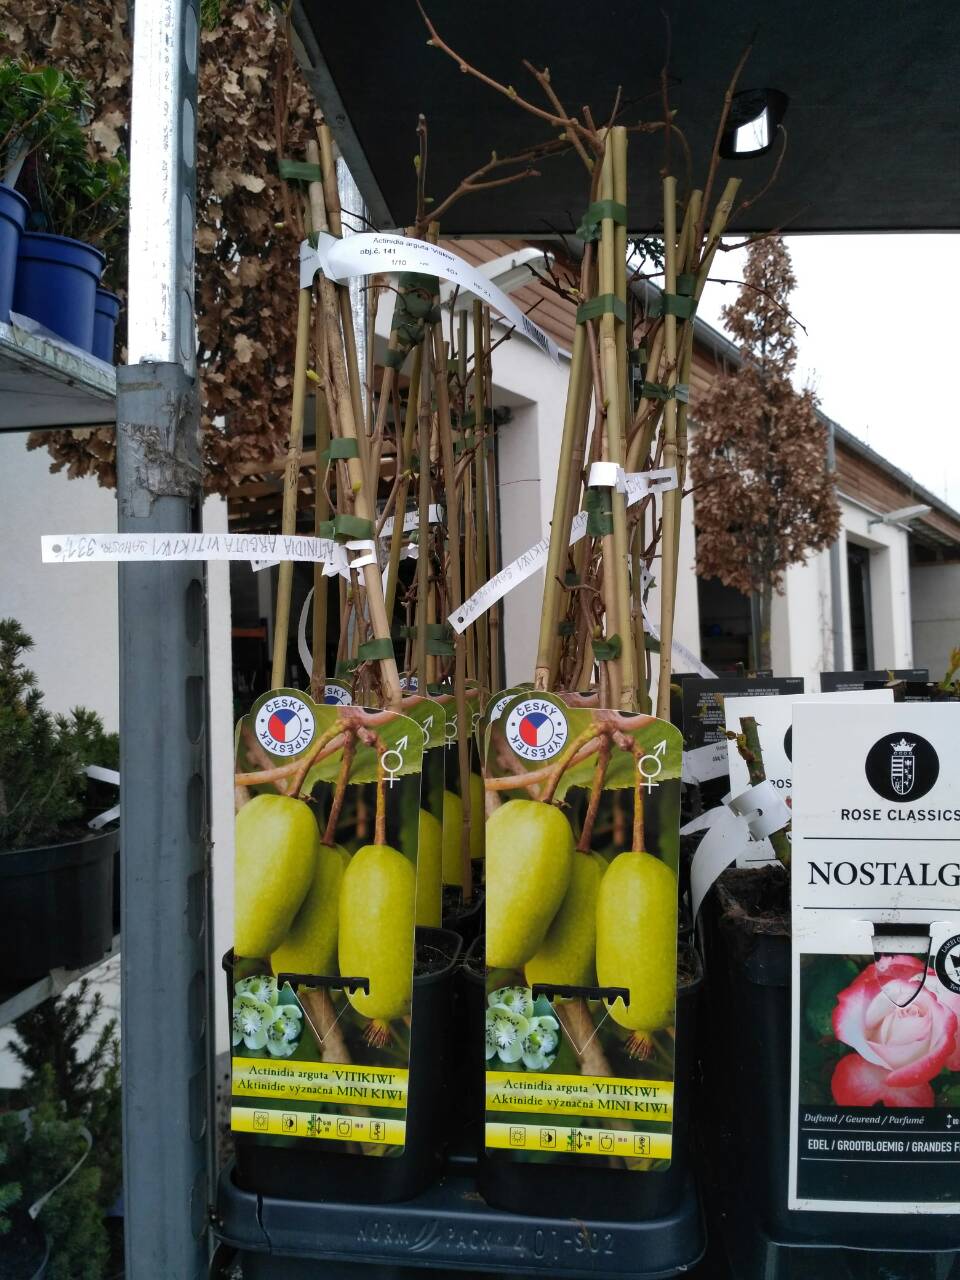 Prodej mini kiwi, zahradnictví Studenec .jpg